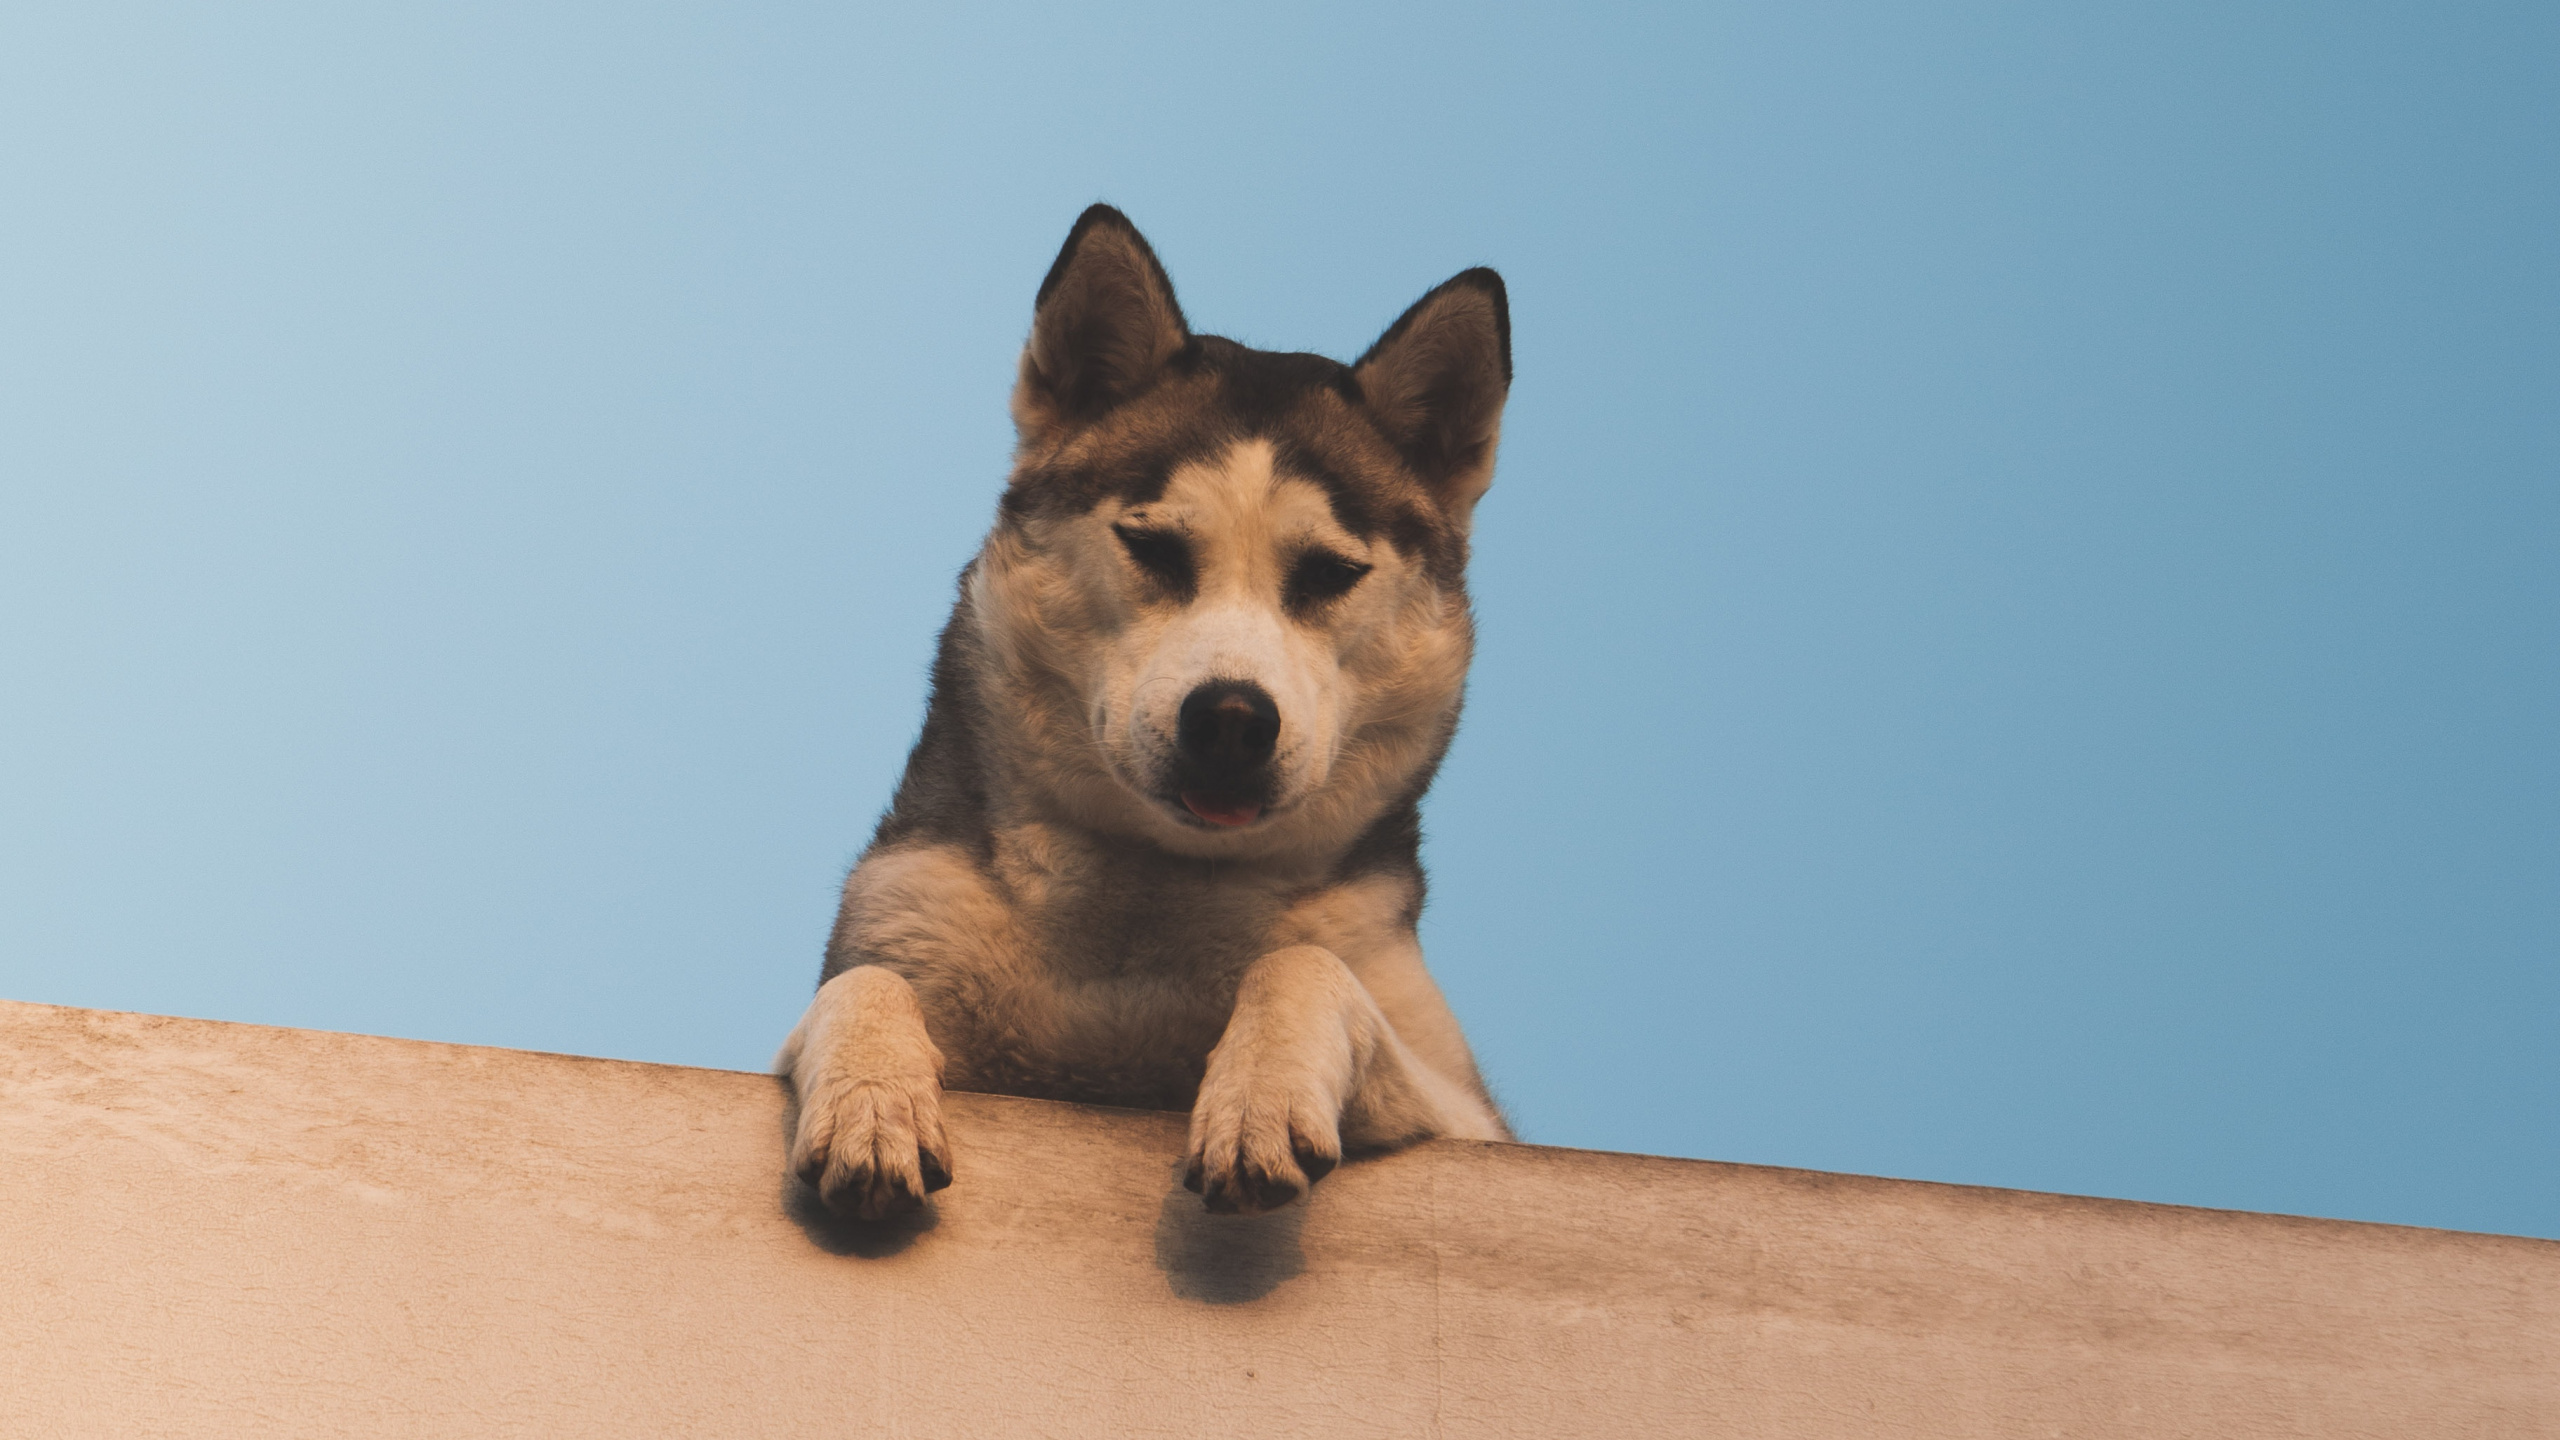 小狗, 赫斯基, 品种的狗, 彭布罗克威尔士柯基, 小鹿 壁纸 2560x1440 允许